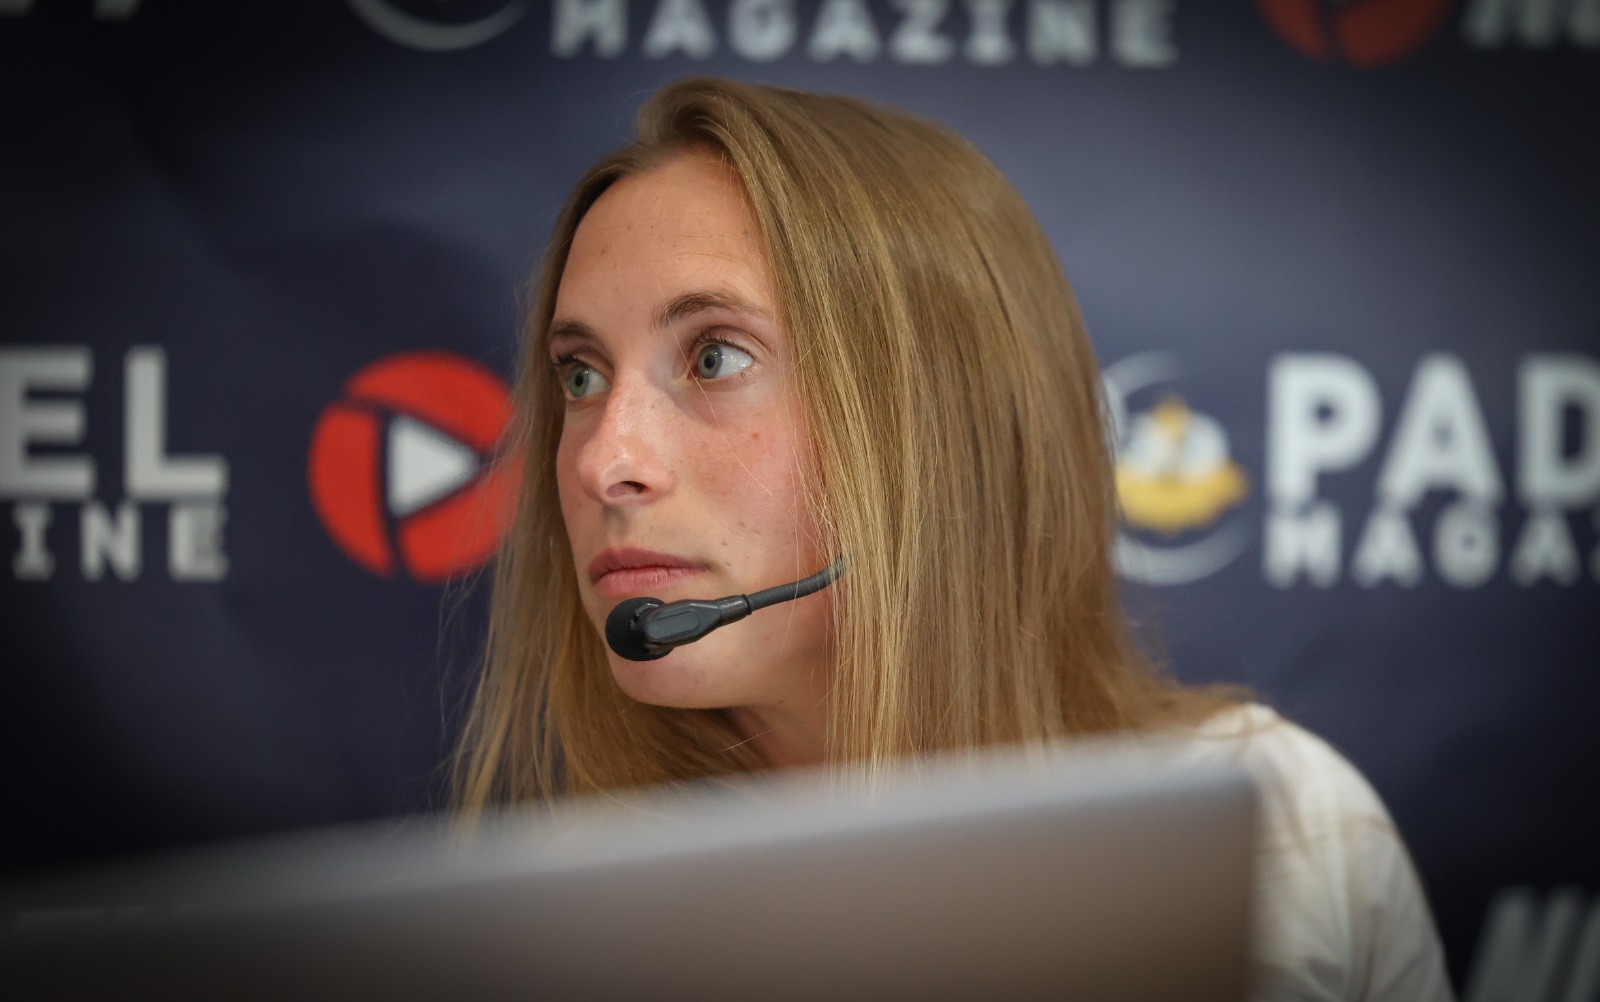 Helena Wyckaert: "Espero veure més jugadores belgues al WPT"